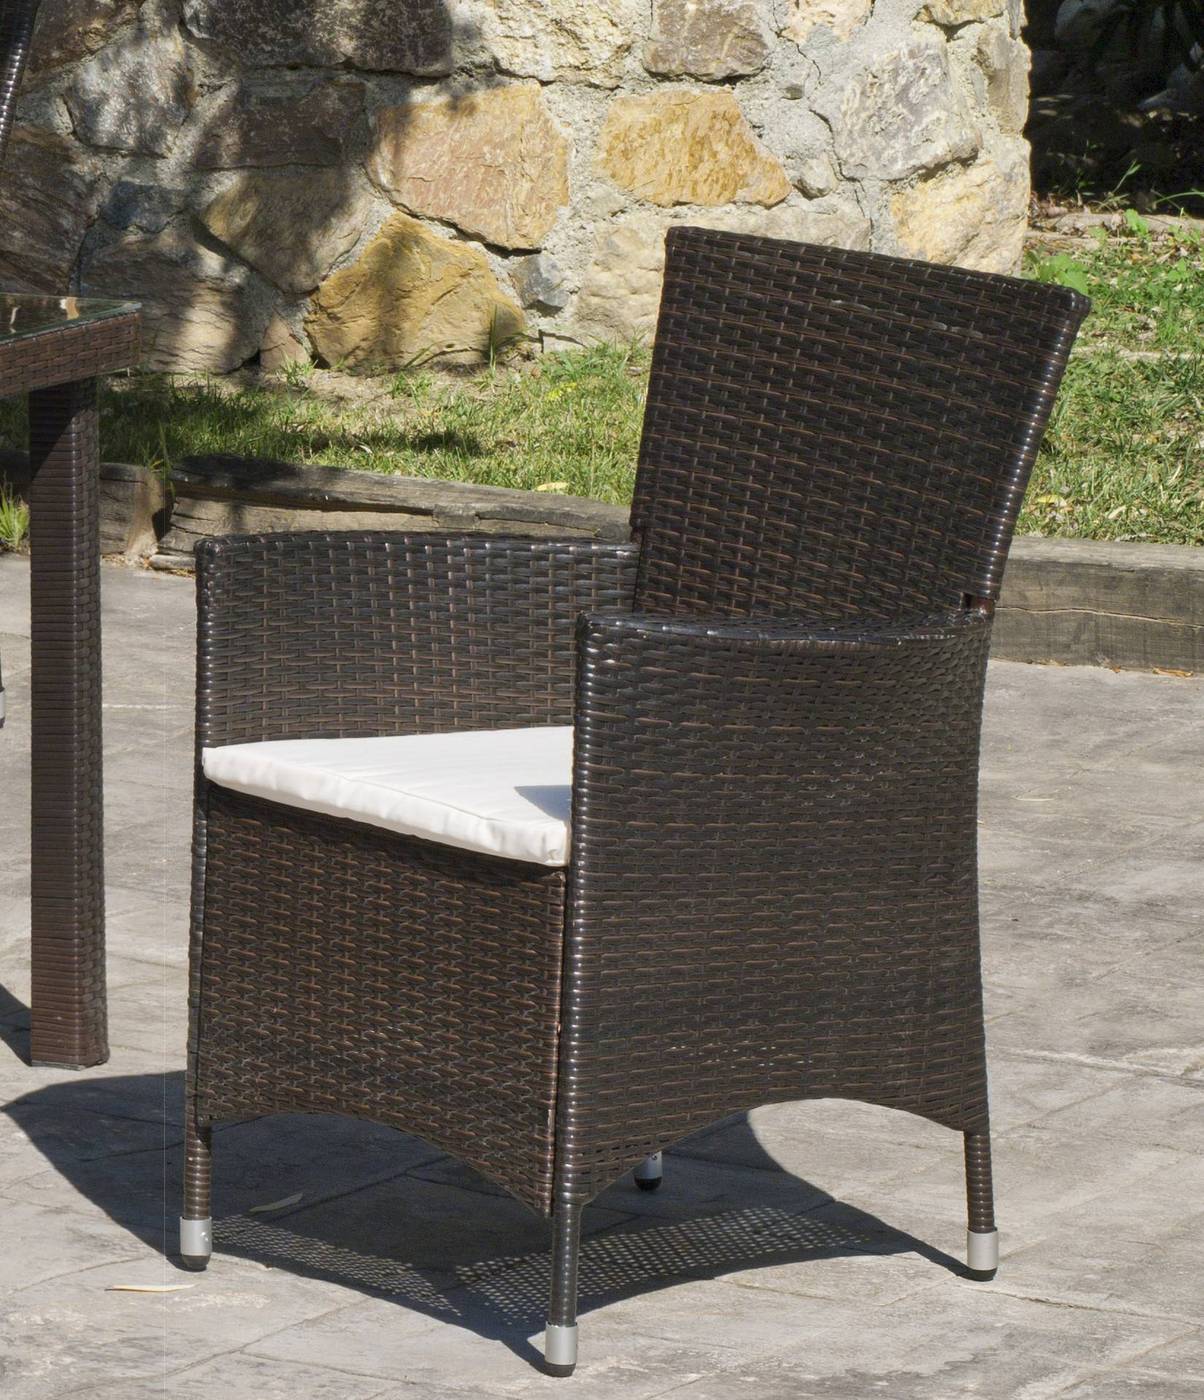 Conjunto Ratán Sint. Bergamo-Reus 120 - Conjunto de ratán sintético color marrón: mesa redonda de 120 cm. + 4 sillones confort con cojín